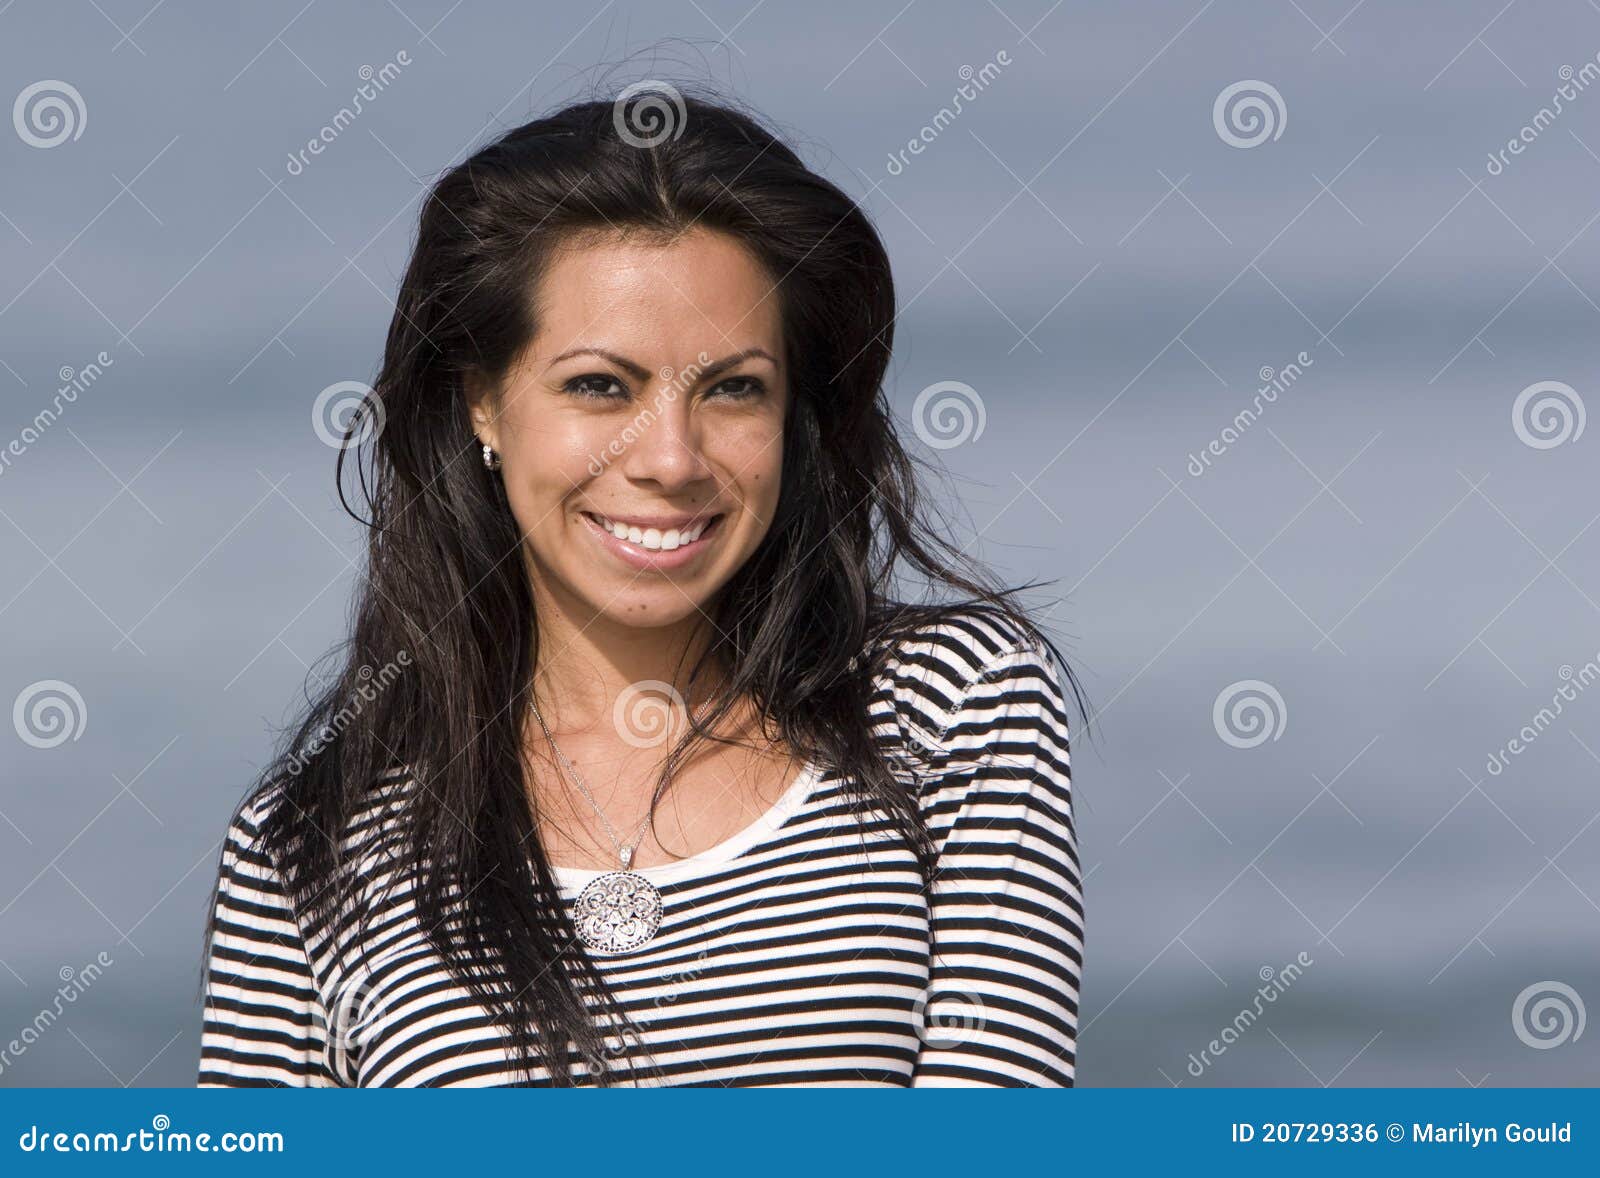 smiling hispanic woman